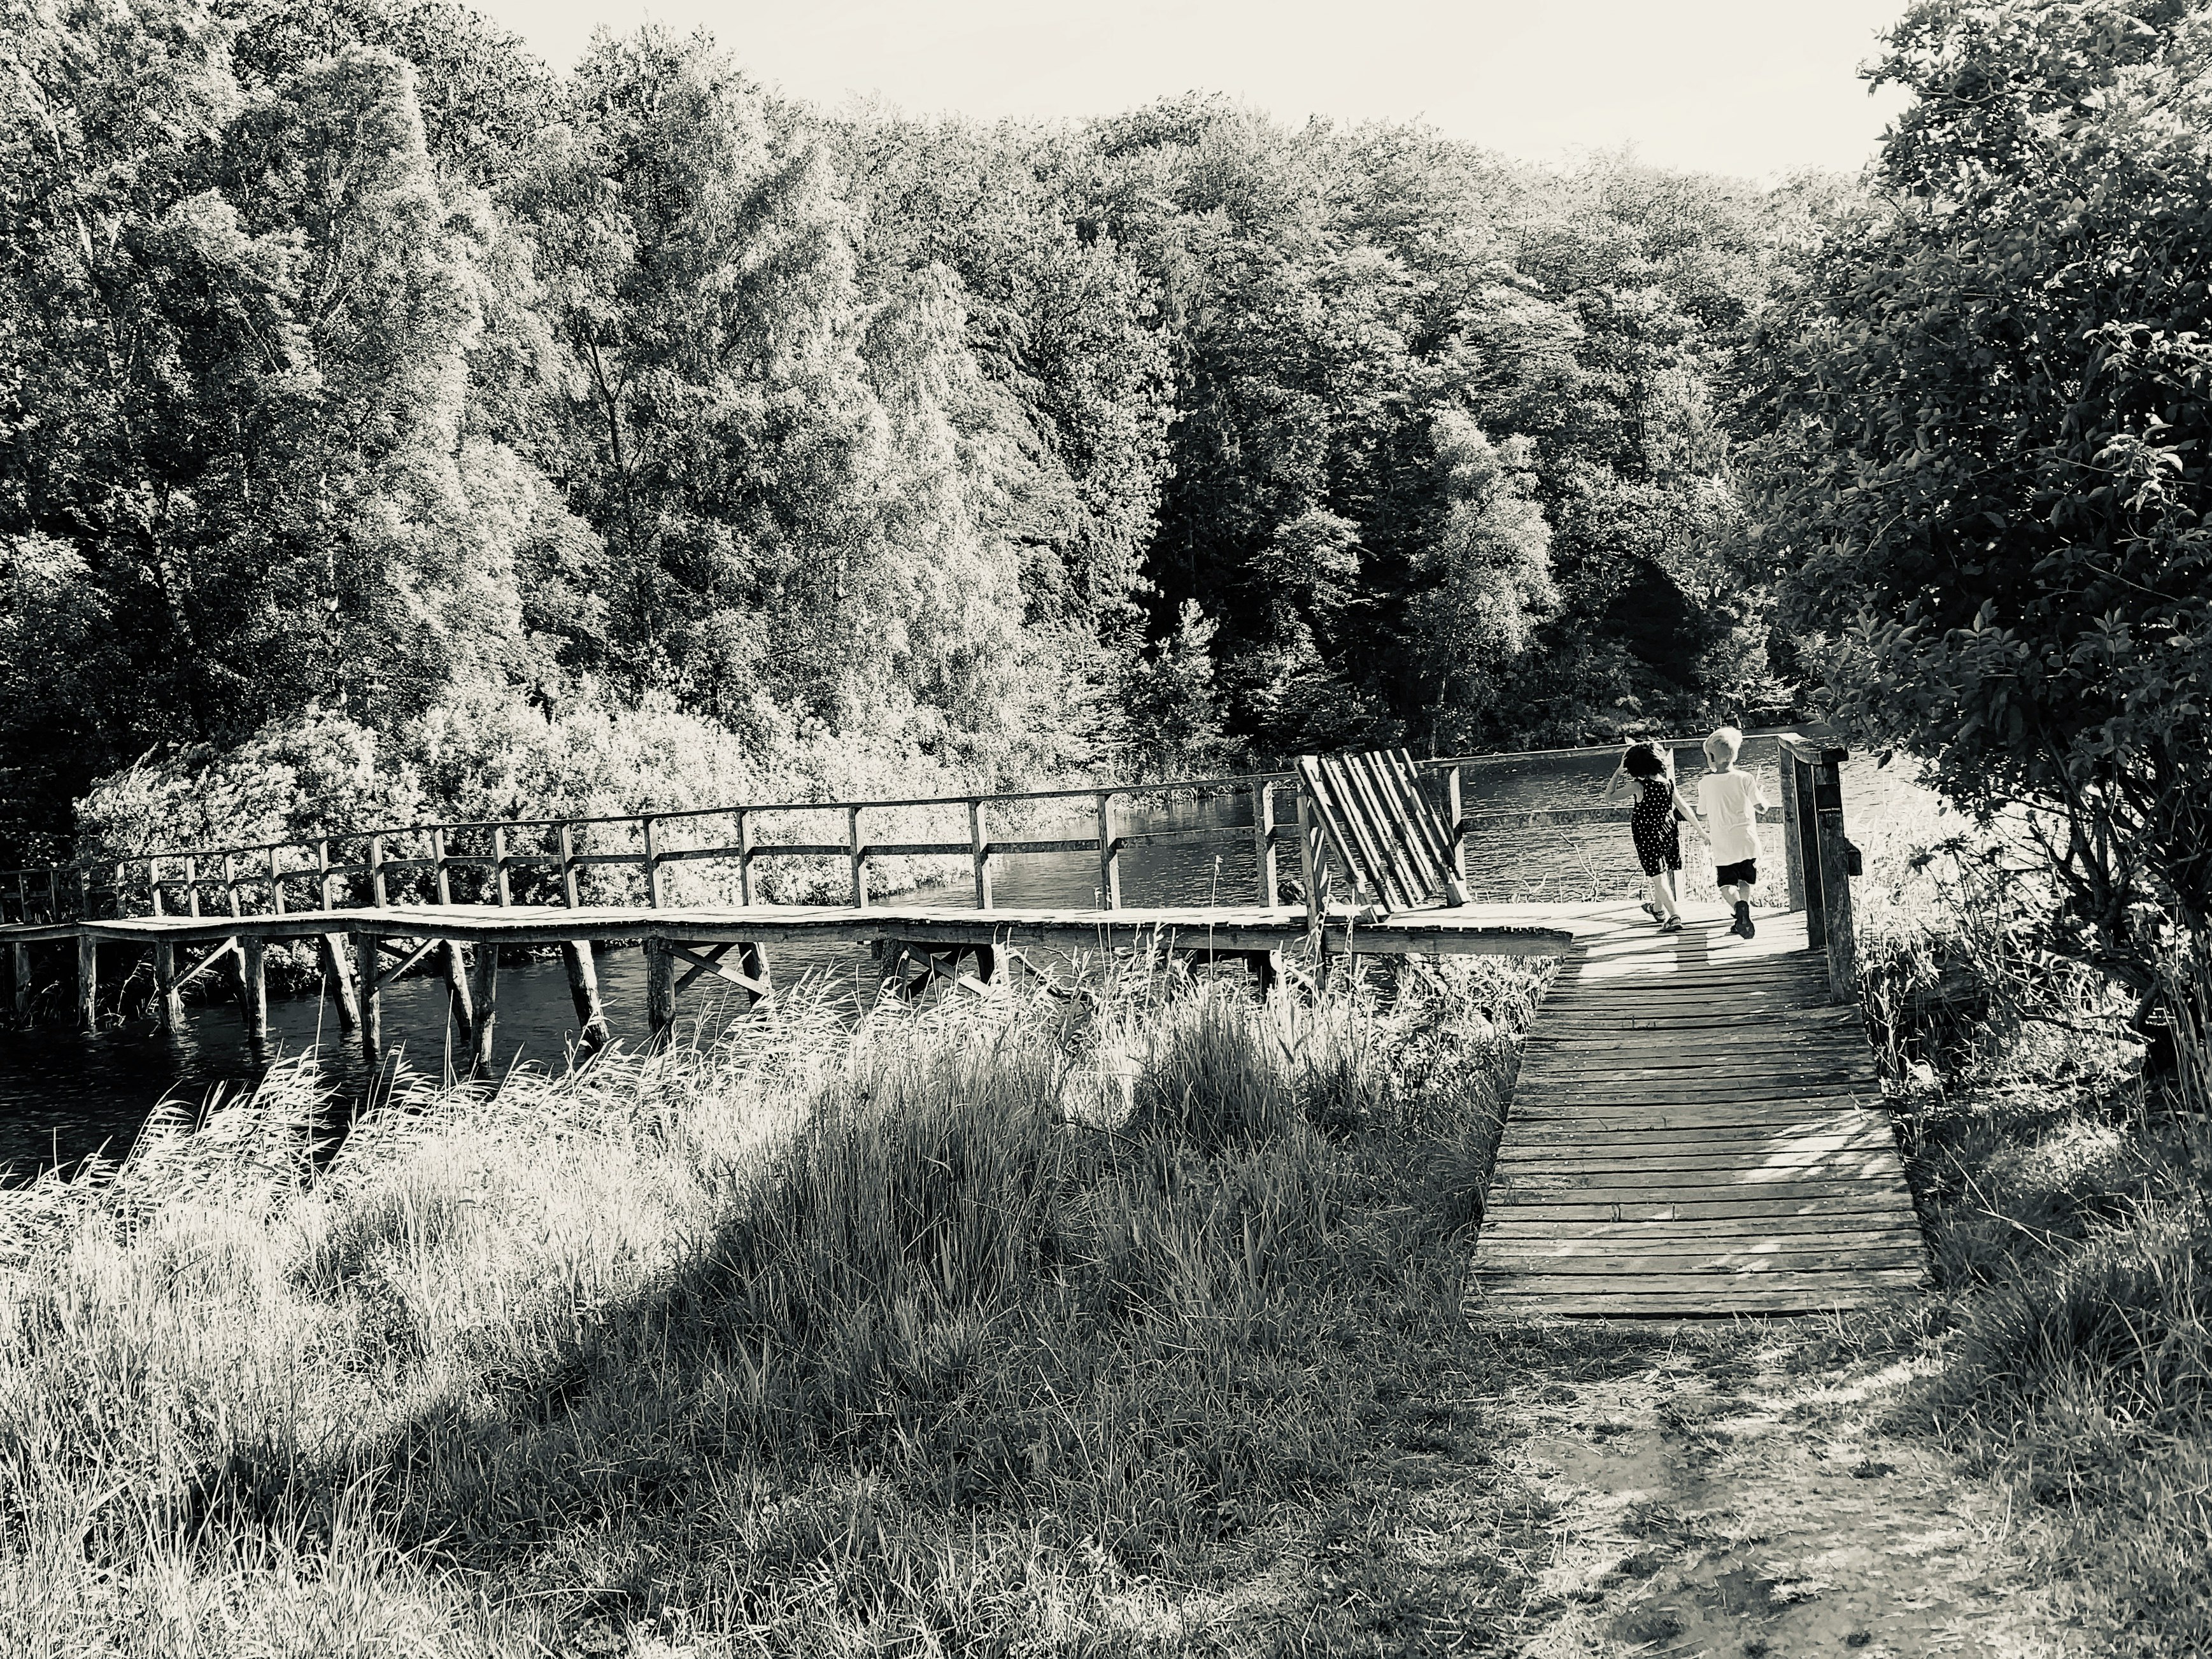 two boys walking on wooden bridge near trees